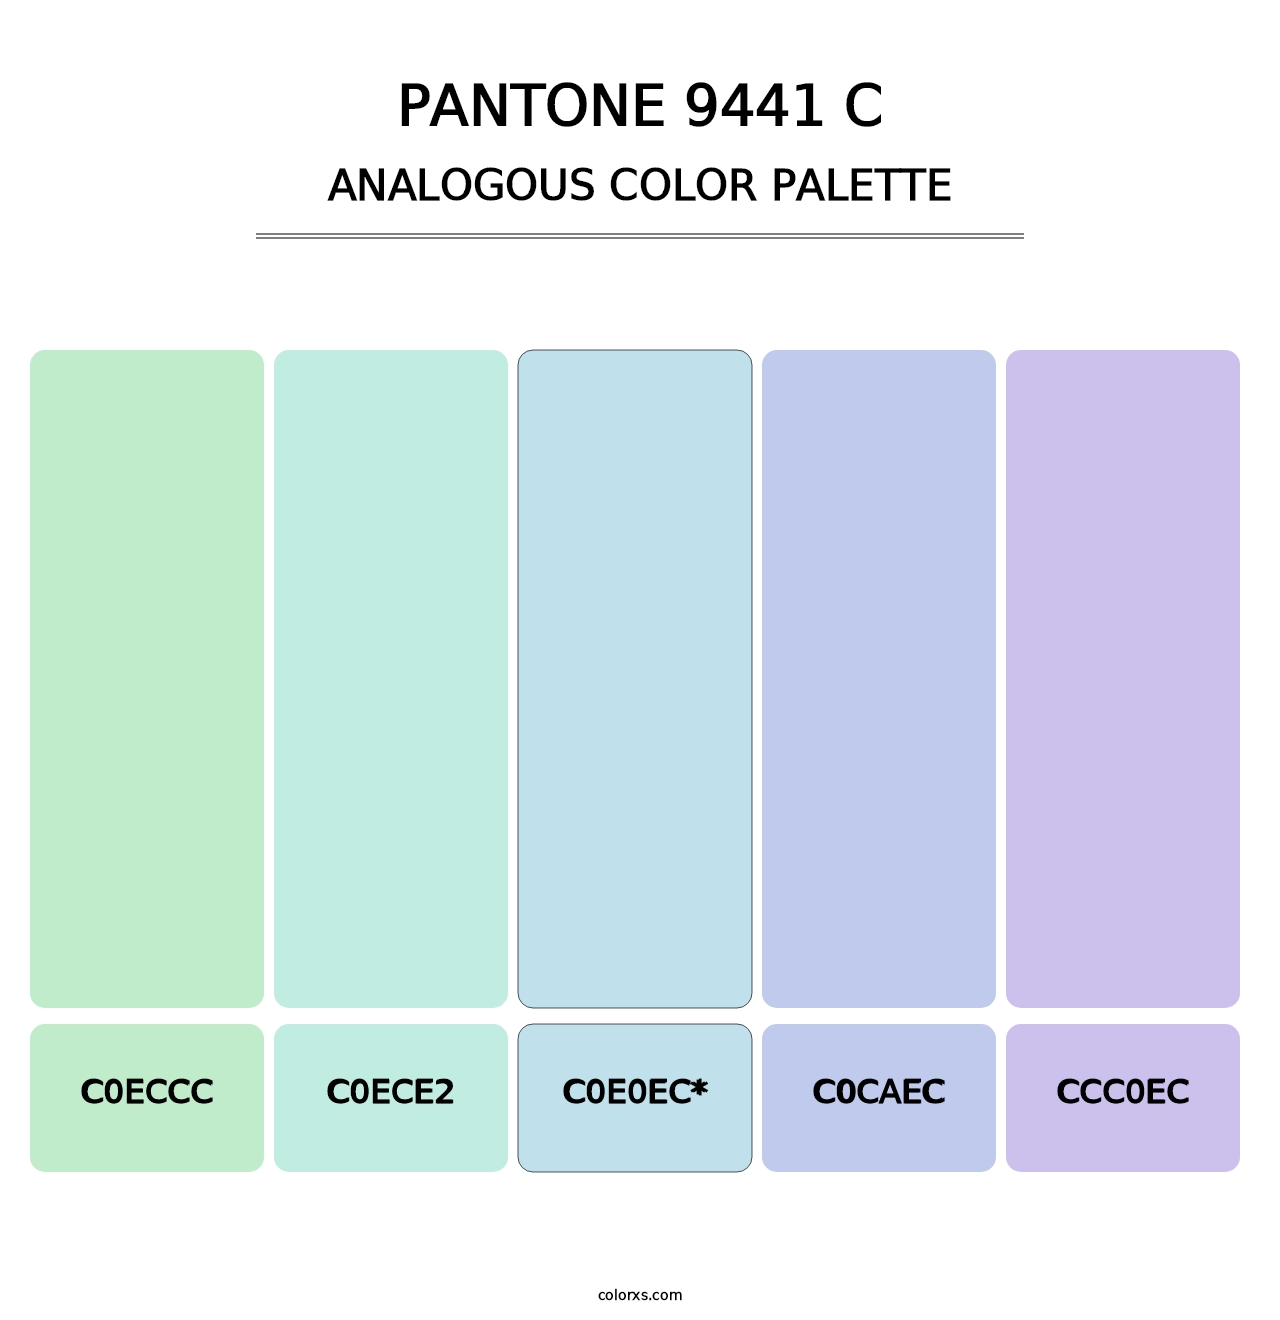 PANTONE 9441 C - Analogous Color Palette